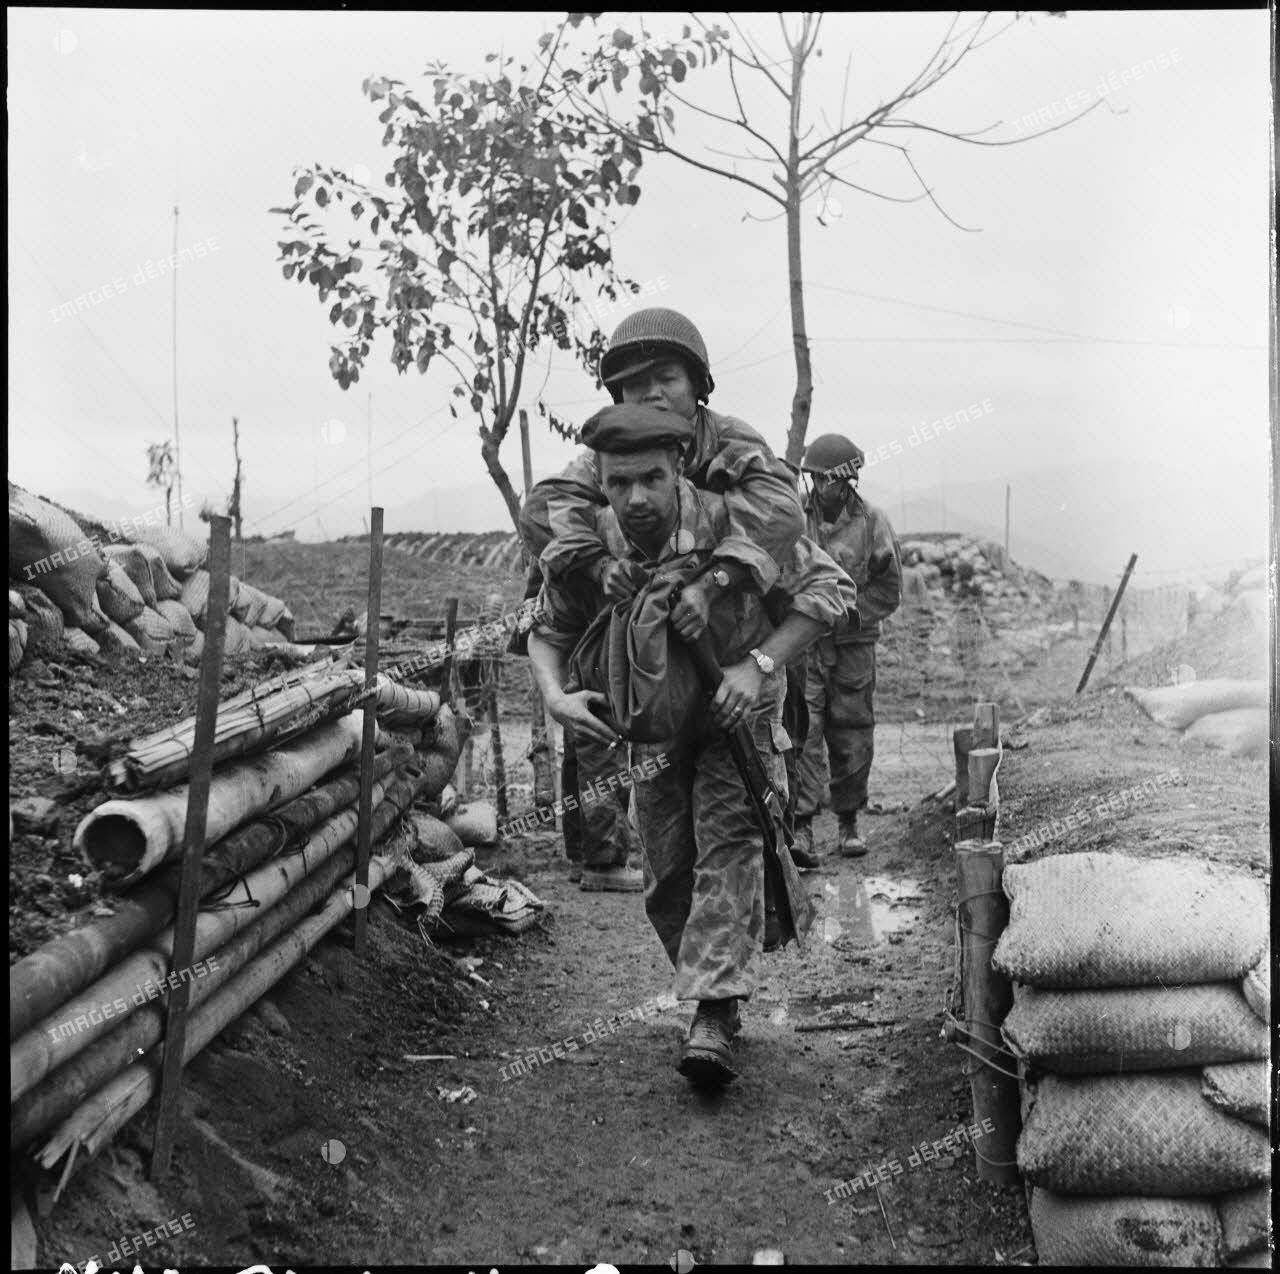 Un parachutiste amène au poste de secours du camp retranché de Diên Biên Phu un camarade vietnamien blessé. En arrière-plan, le poste de commandement du camp retranché.